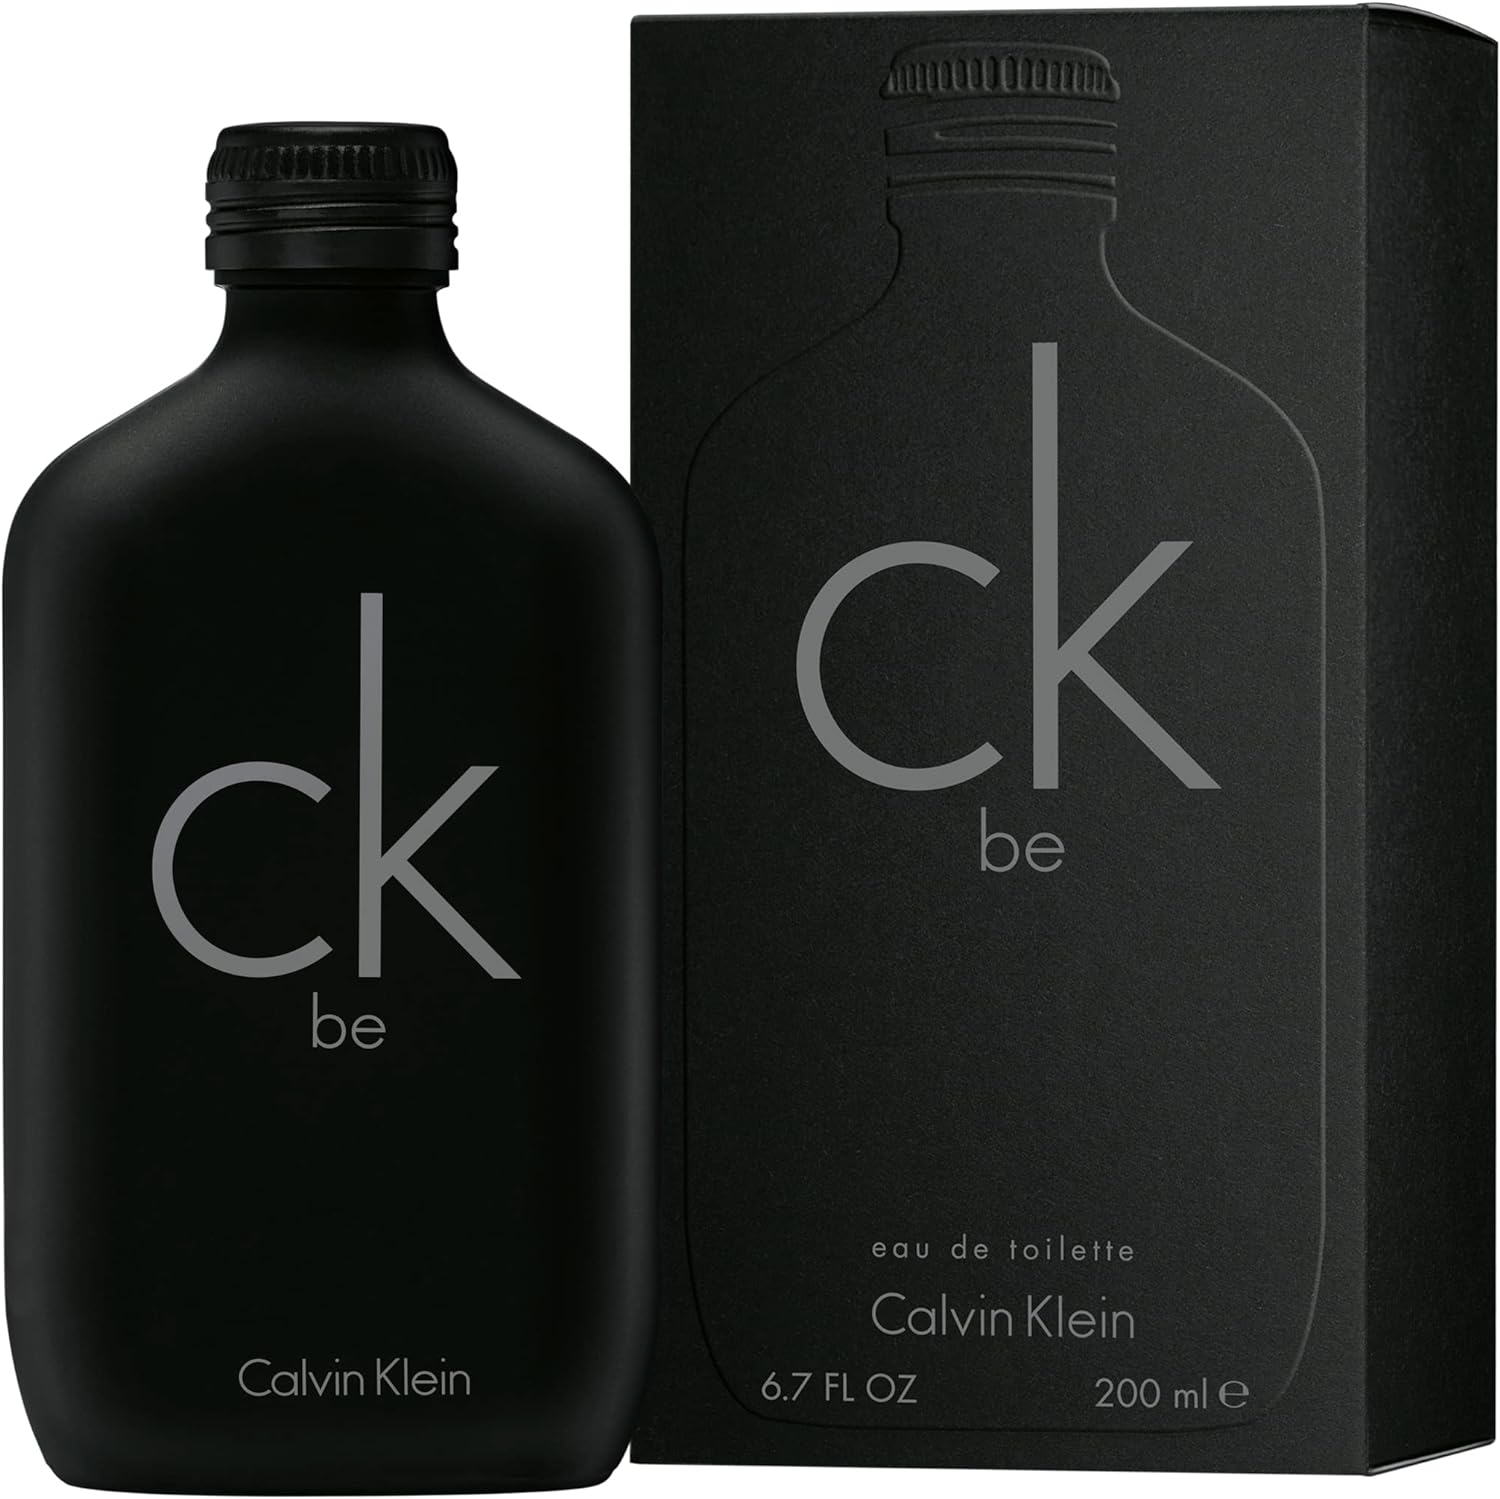 Calvin Klein CK Be Eau de Toilette Spray for Unisex